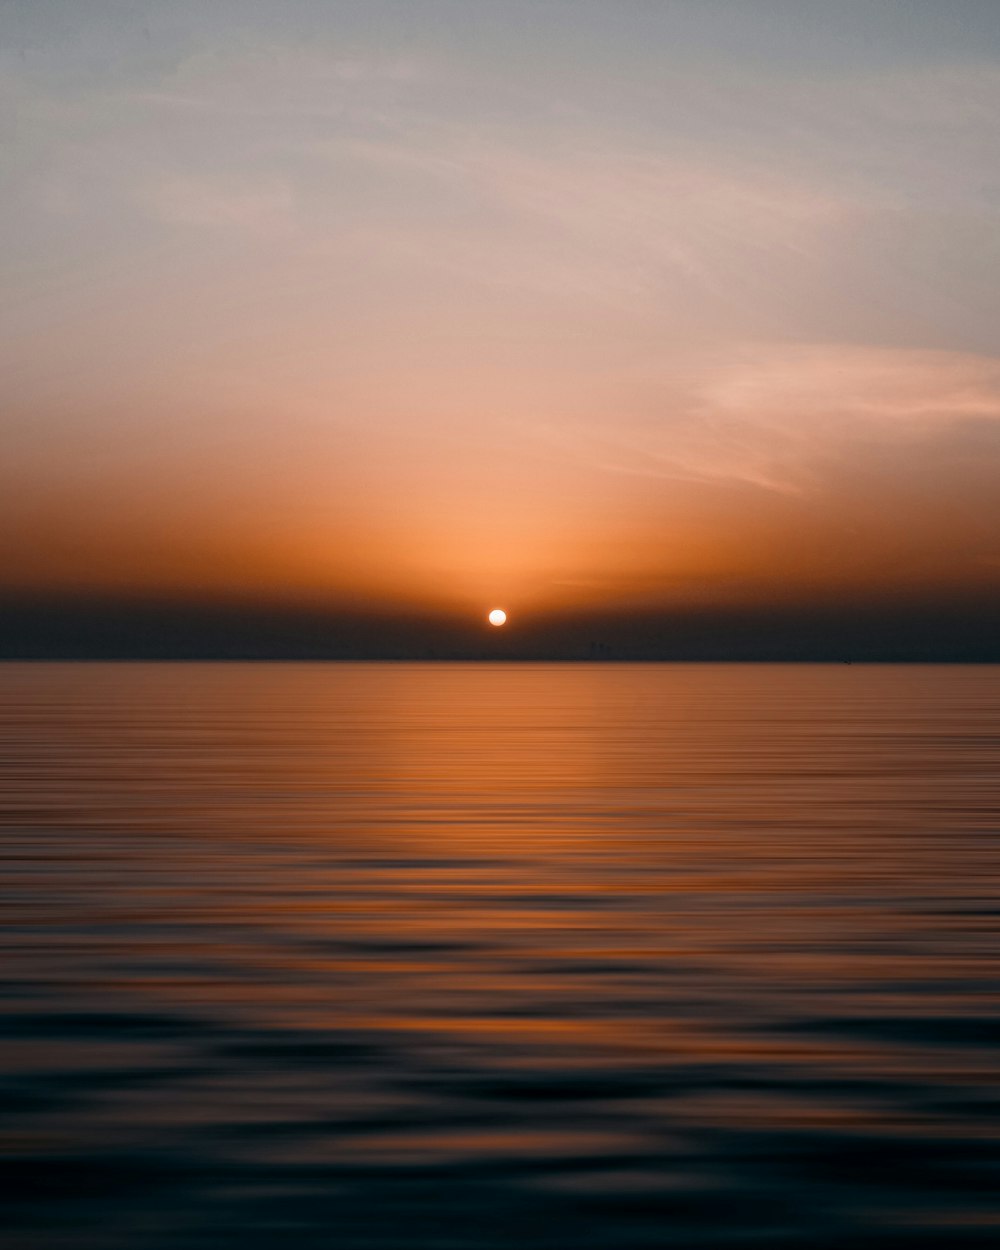 Le soleil se couche sur l’eau dans l’océan